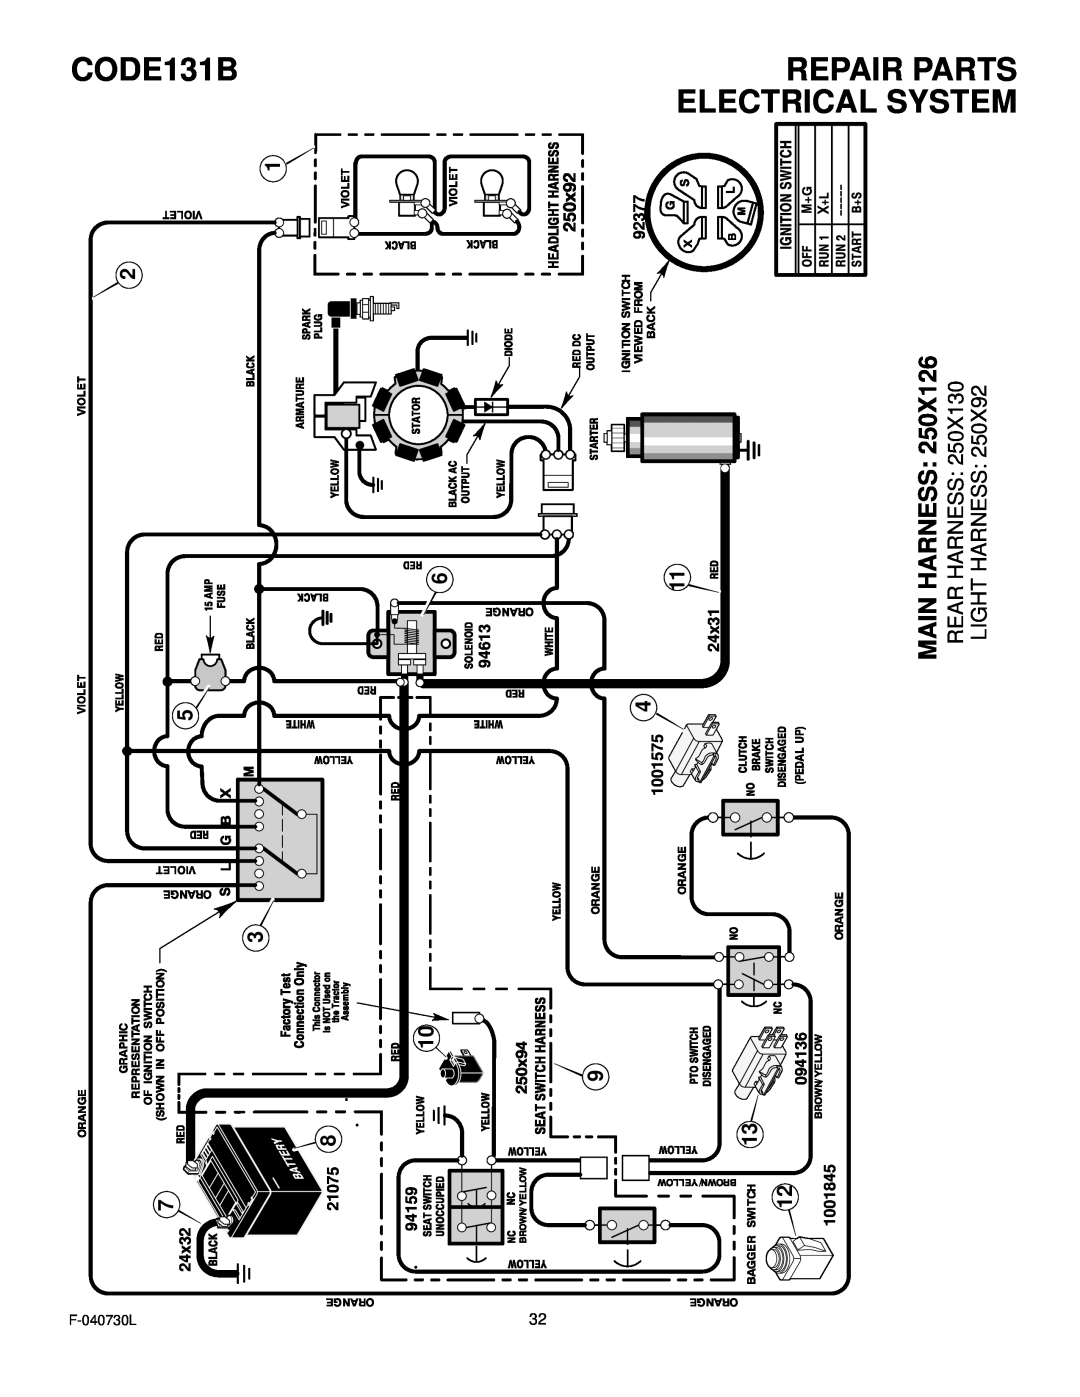 Hayter Mowers manual Repair Parts Electrical System, Main Harness, CODE131B 